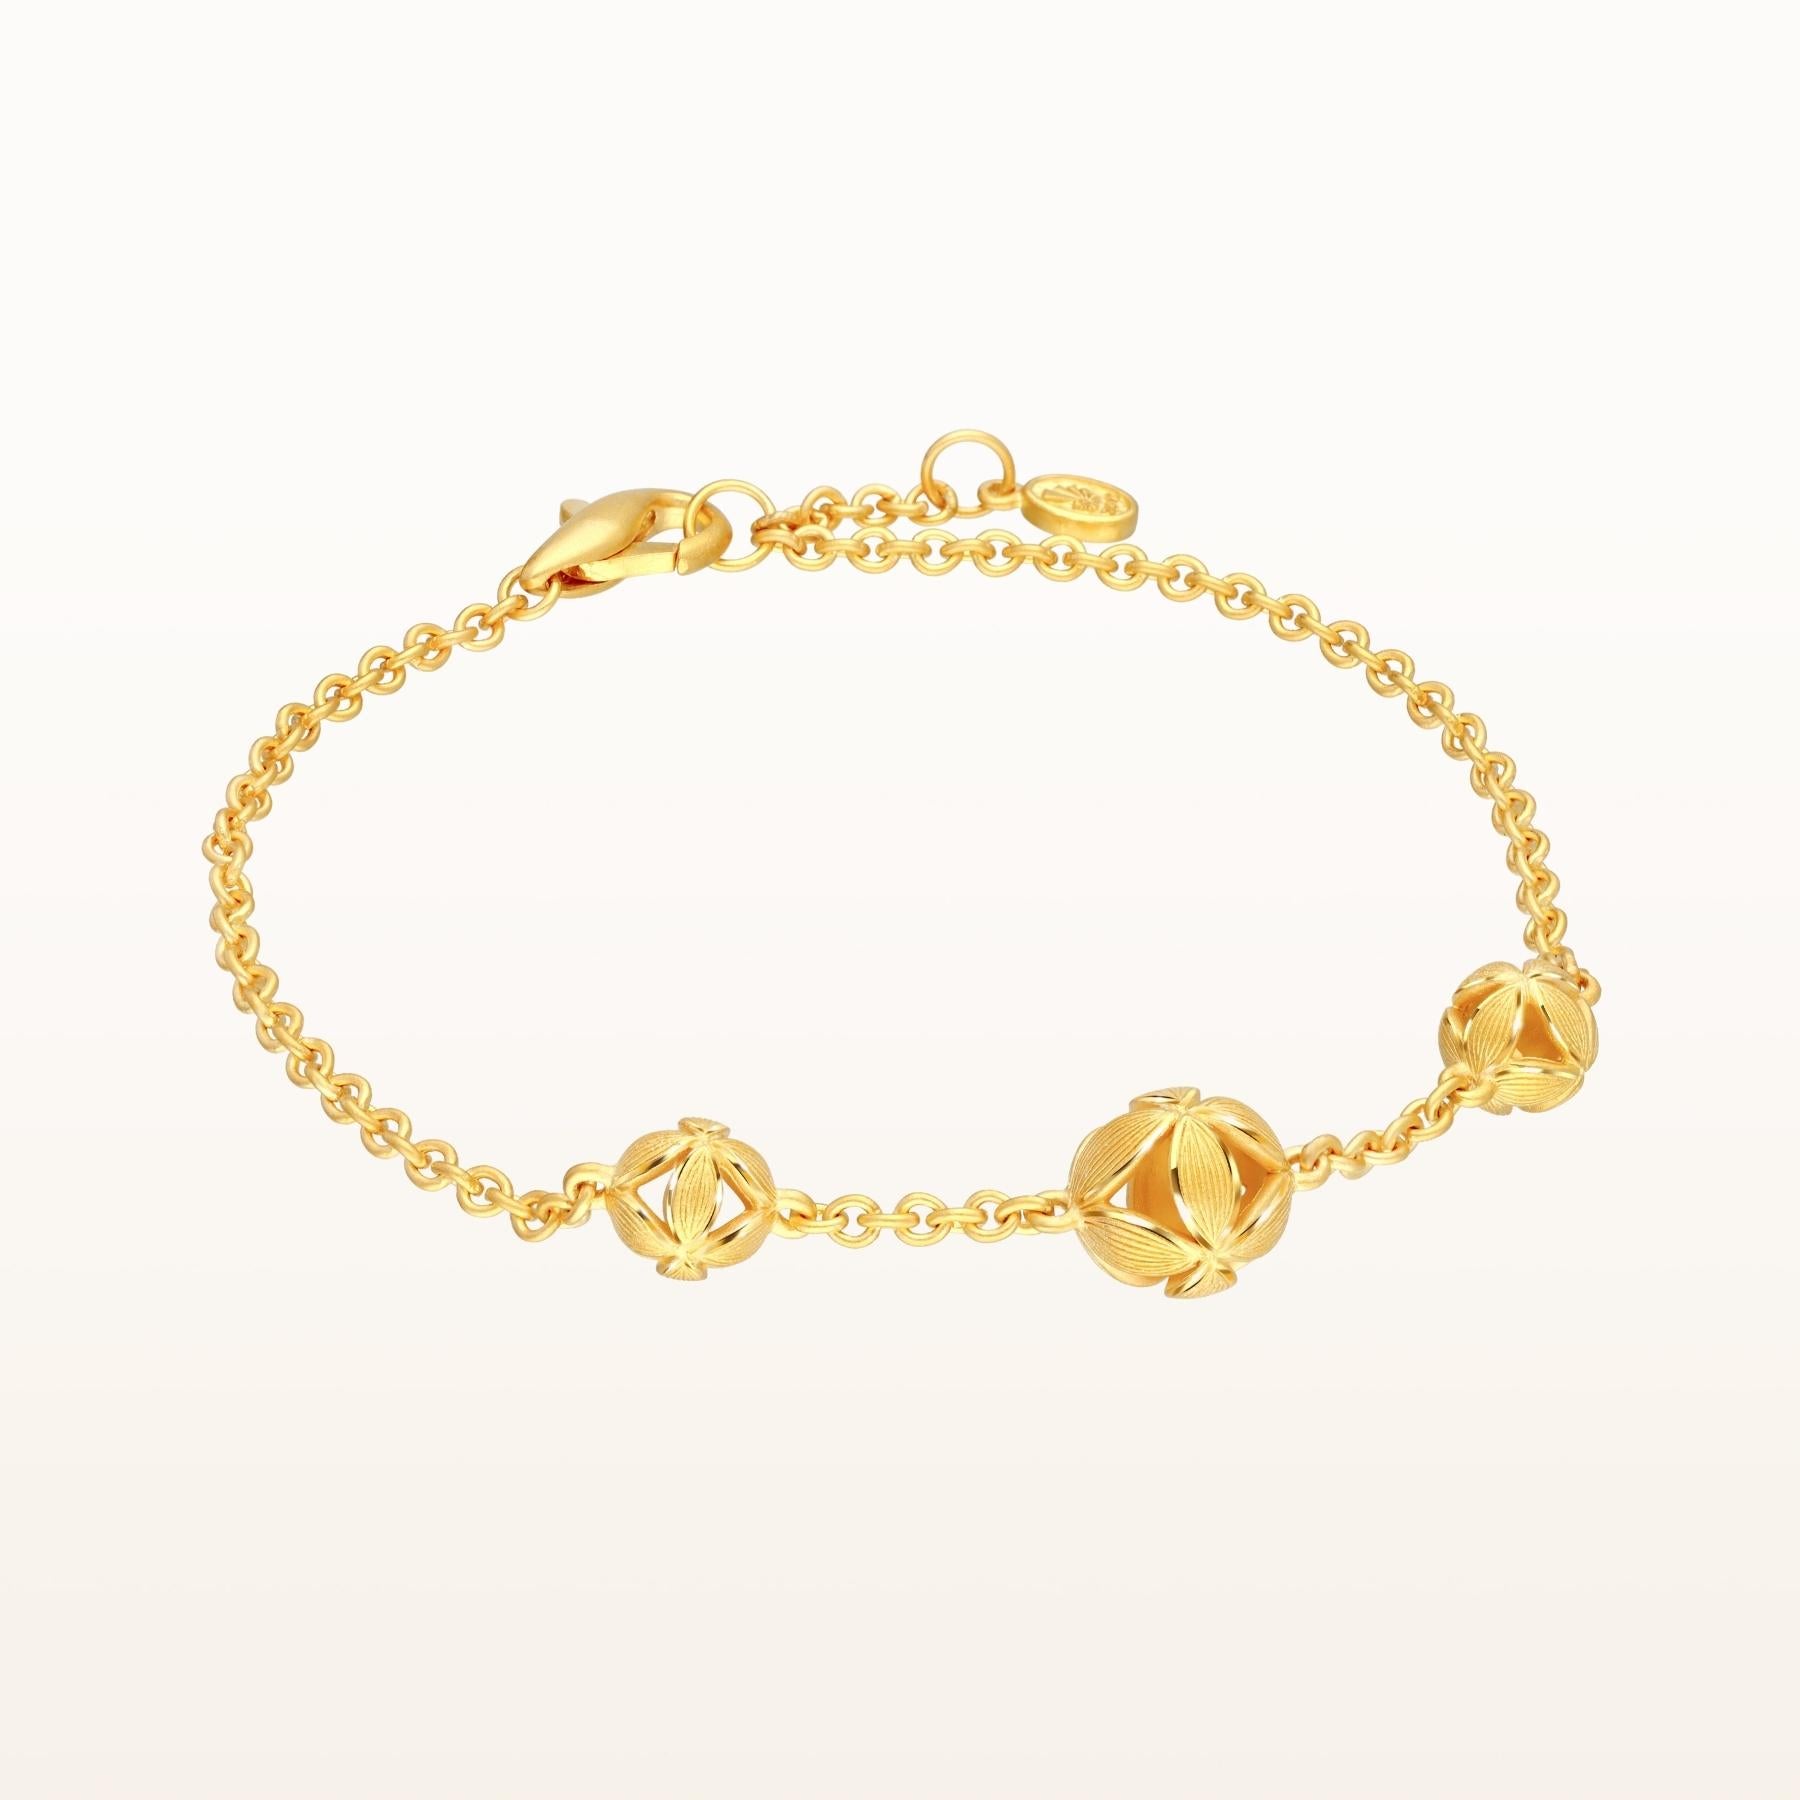 Pure Gold bracelet stock photo. Image of shiny, designer - 26939940